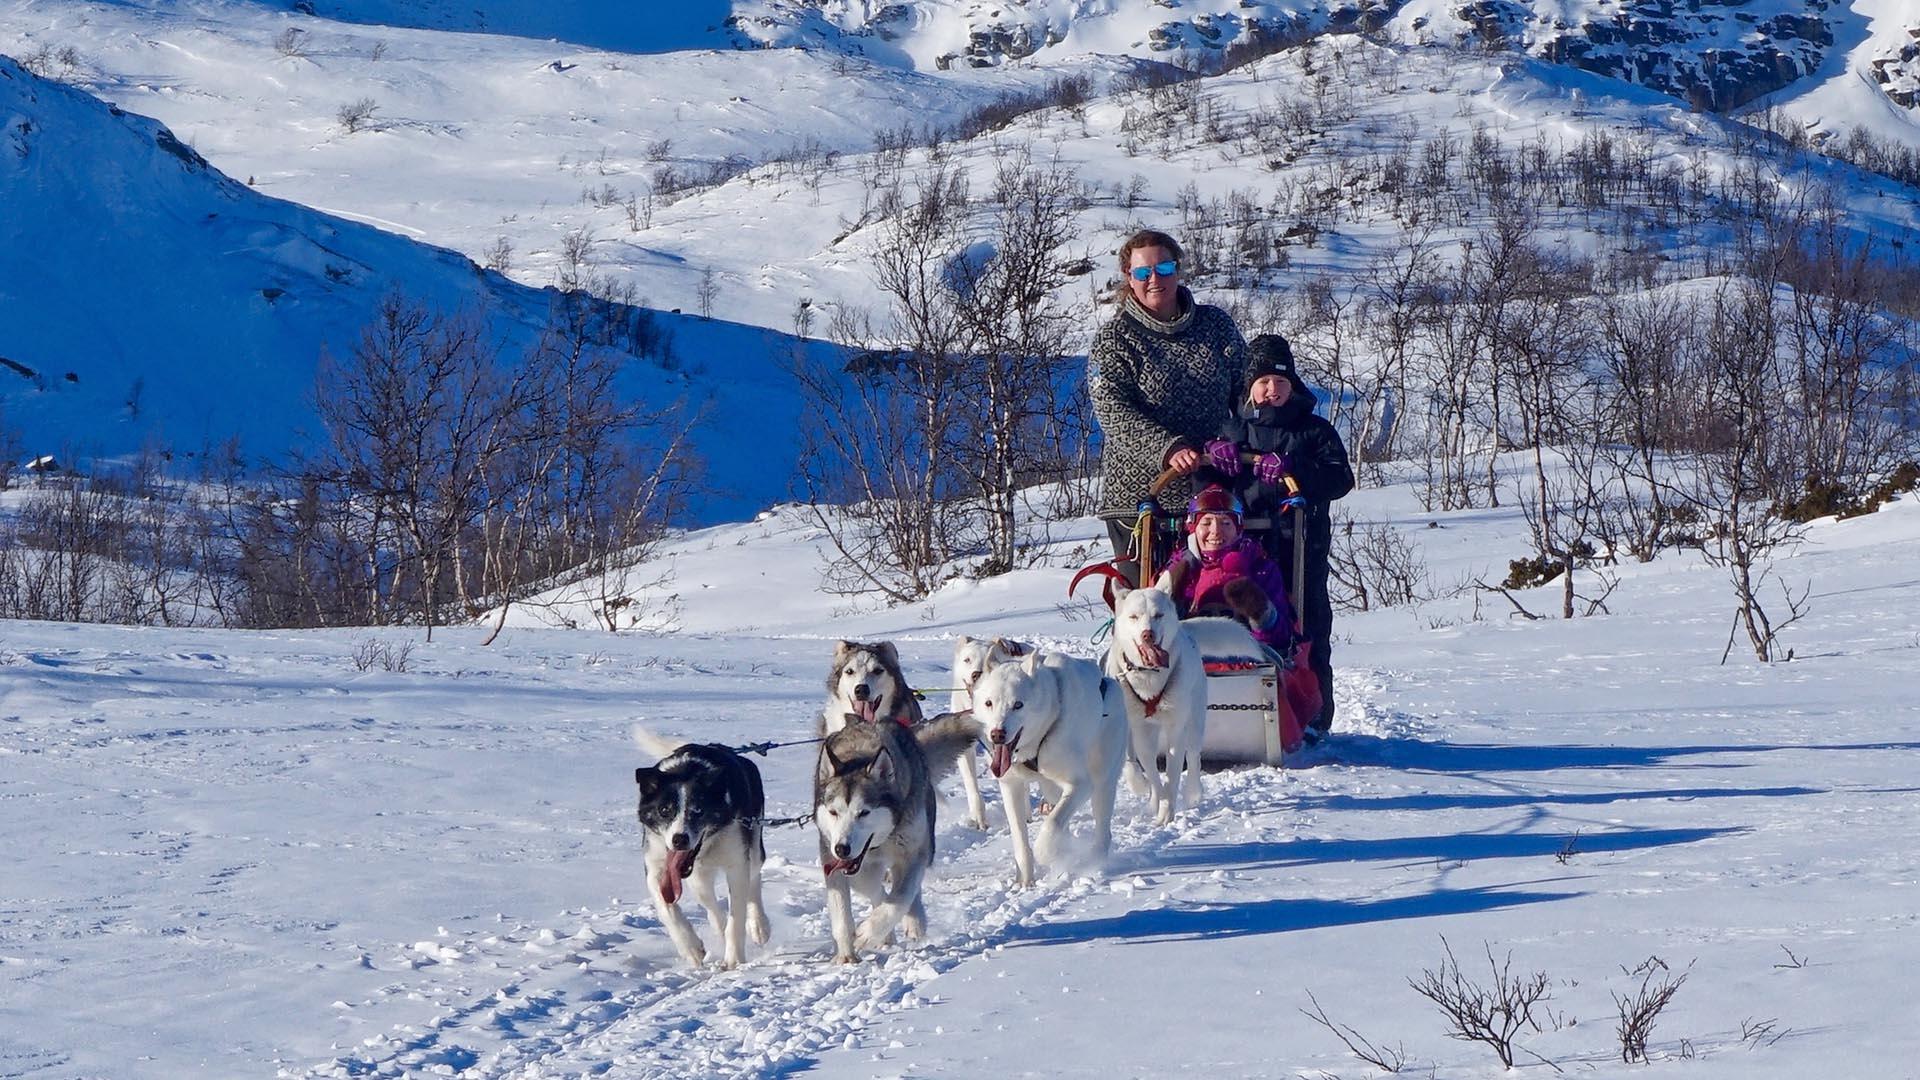 Ein Hundeschlittengespann mit zwei Kindern, die als Passagiere den Schlittenführer begleiten, kommt in einer verschneiten Landschaft auf den Fotografen zugelaufen.